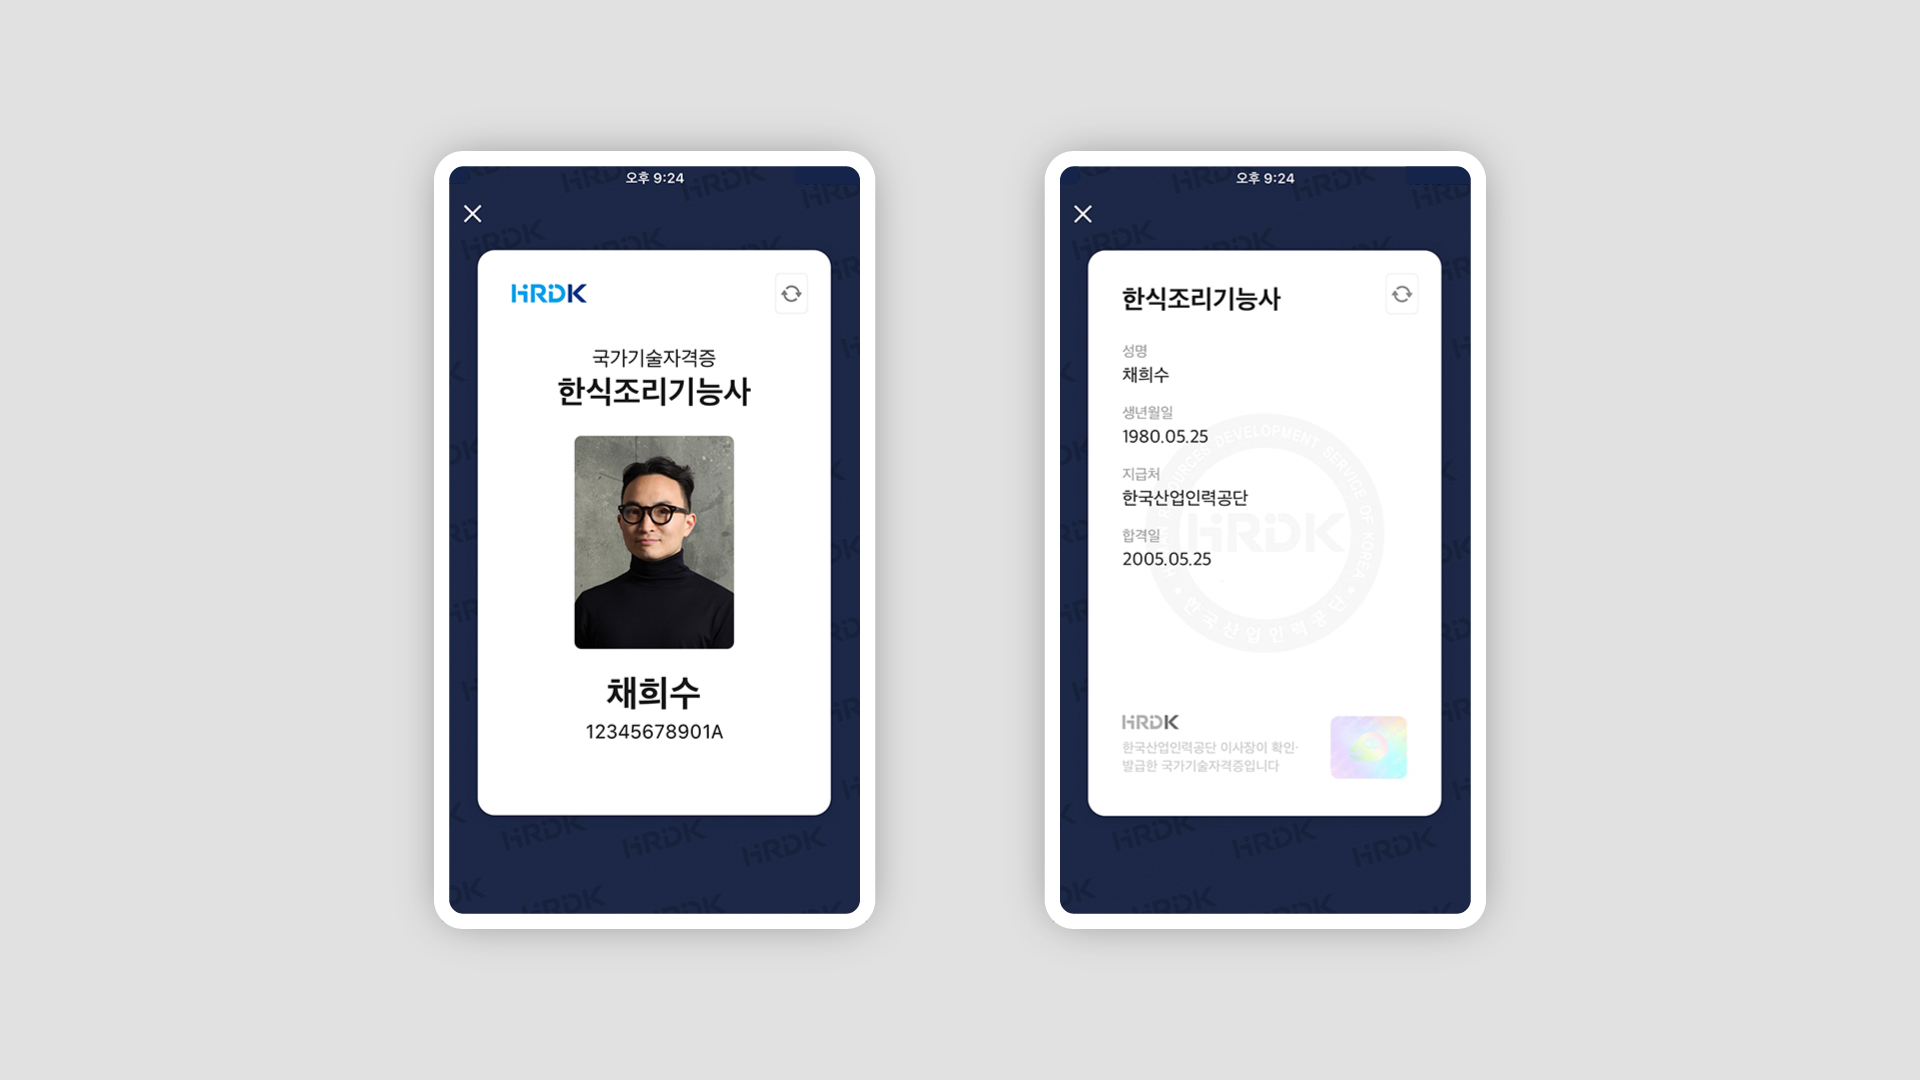 한국산업인력공단  한식조리기능사 국가기술자격증이 카카오톡 지갑에 구현된 화면